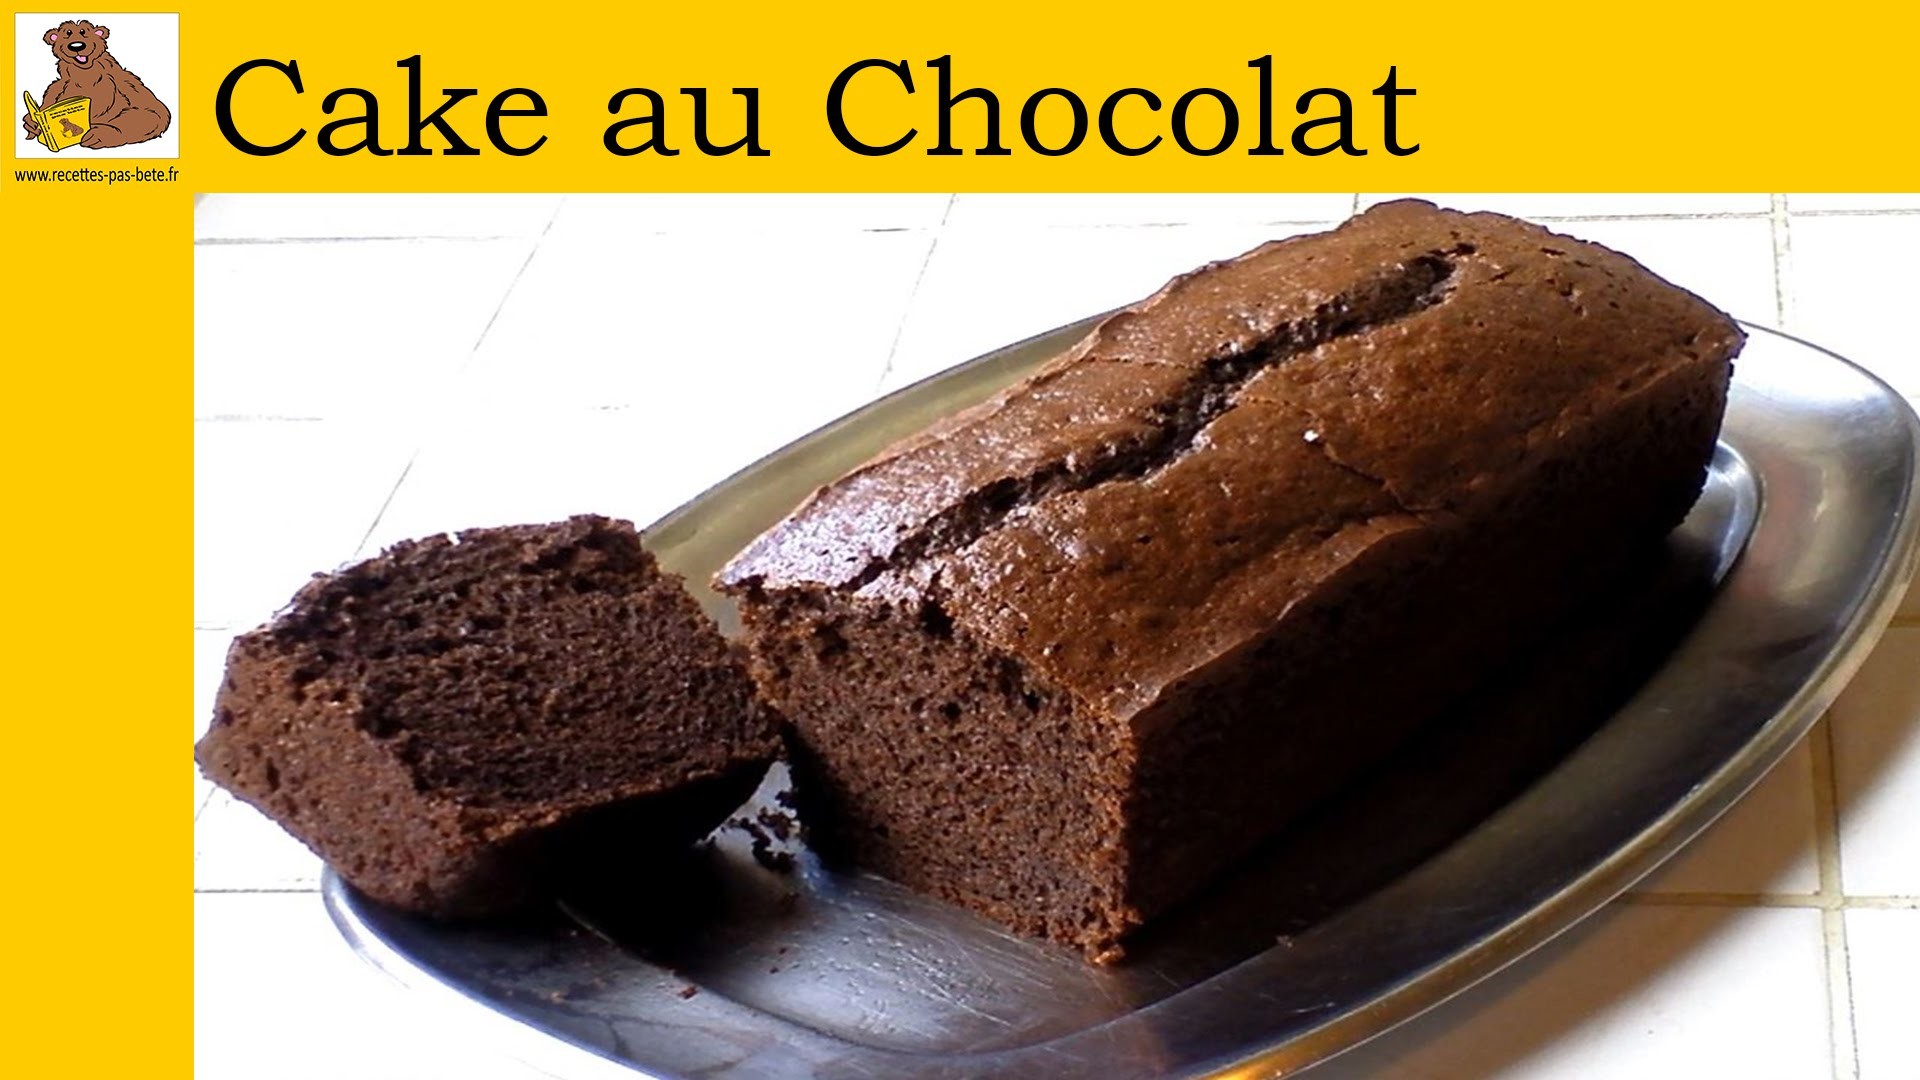 Le cake au chocolat (recette rapide et facile) HD